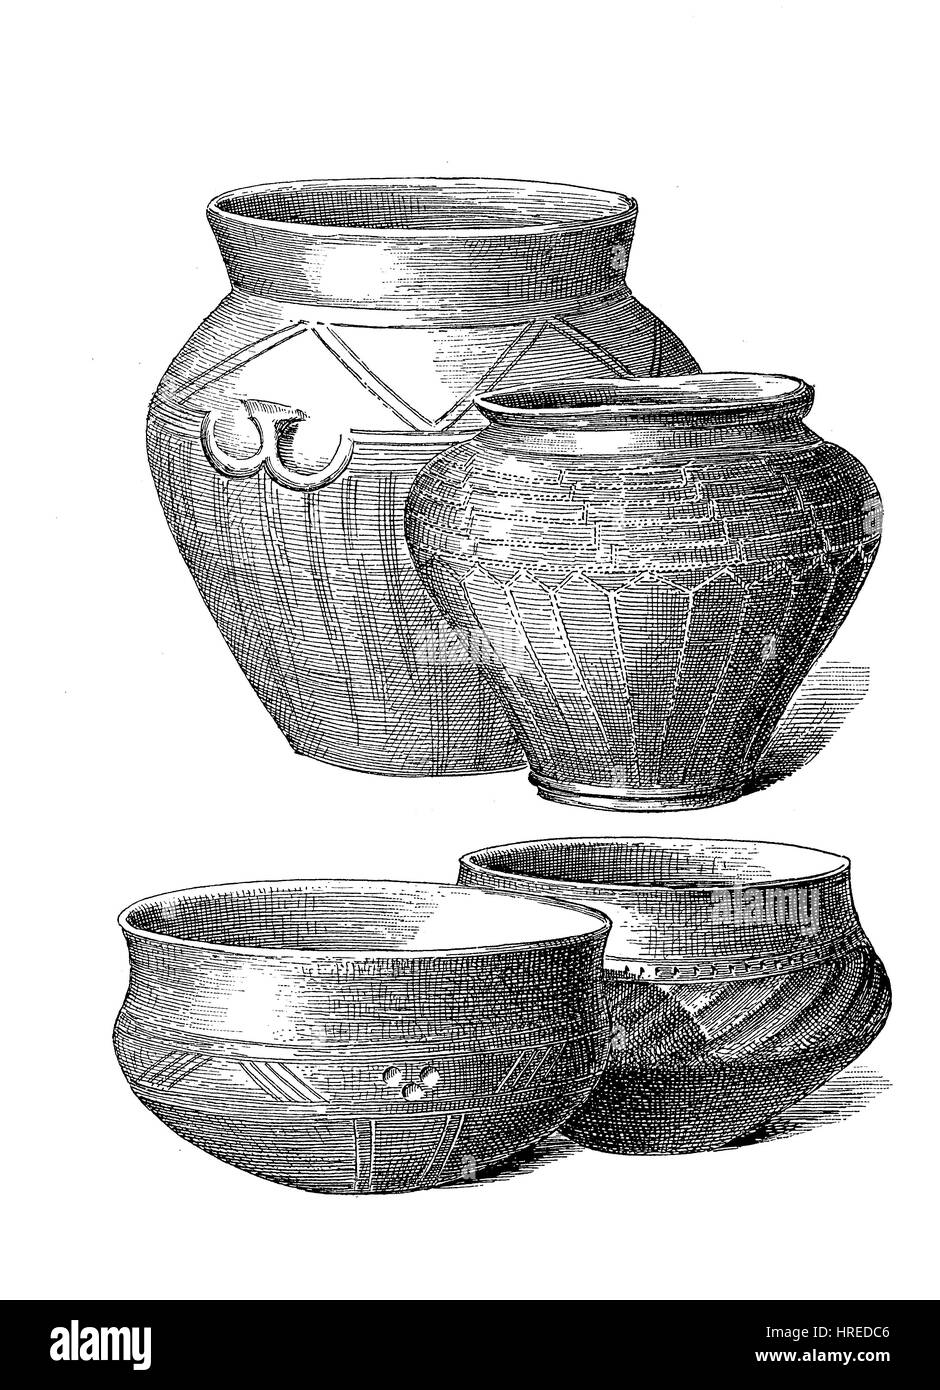 Les navires de l'époque romaine, plusieurs navires de l'urne d'argile, l'Allemagne, la reproduction d'une gravure sur bois du xixe siècle, 1885 Banque D'Images